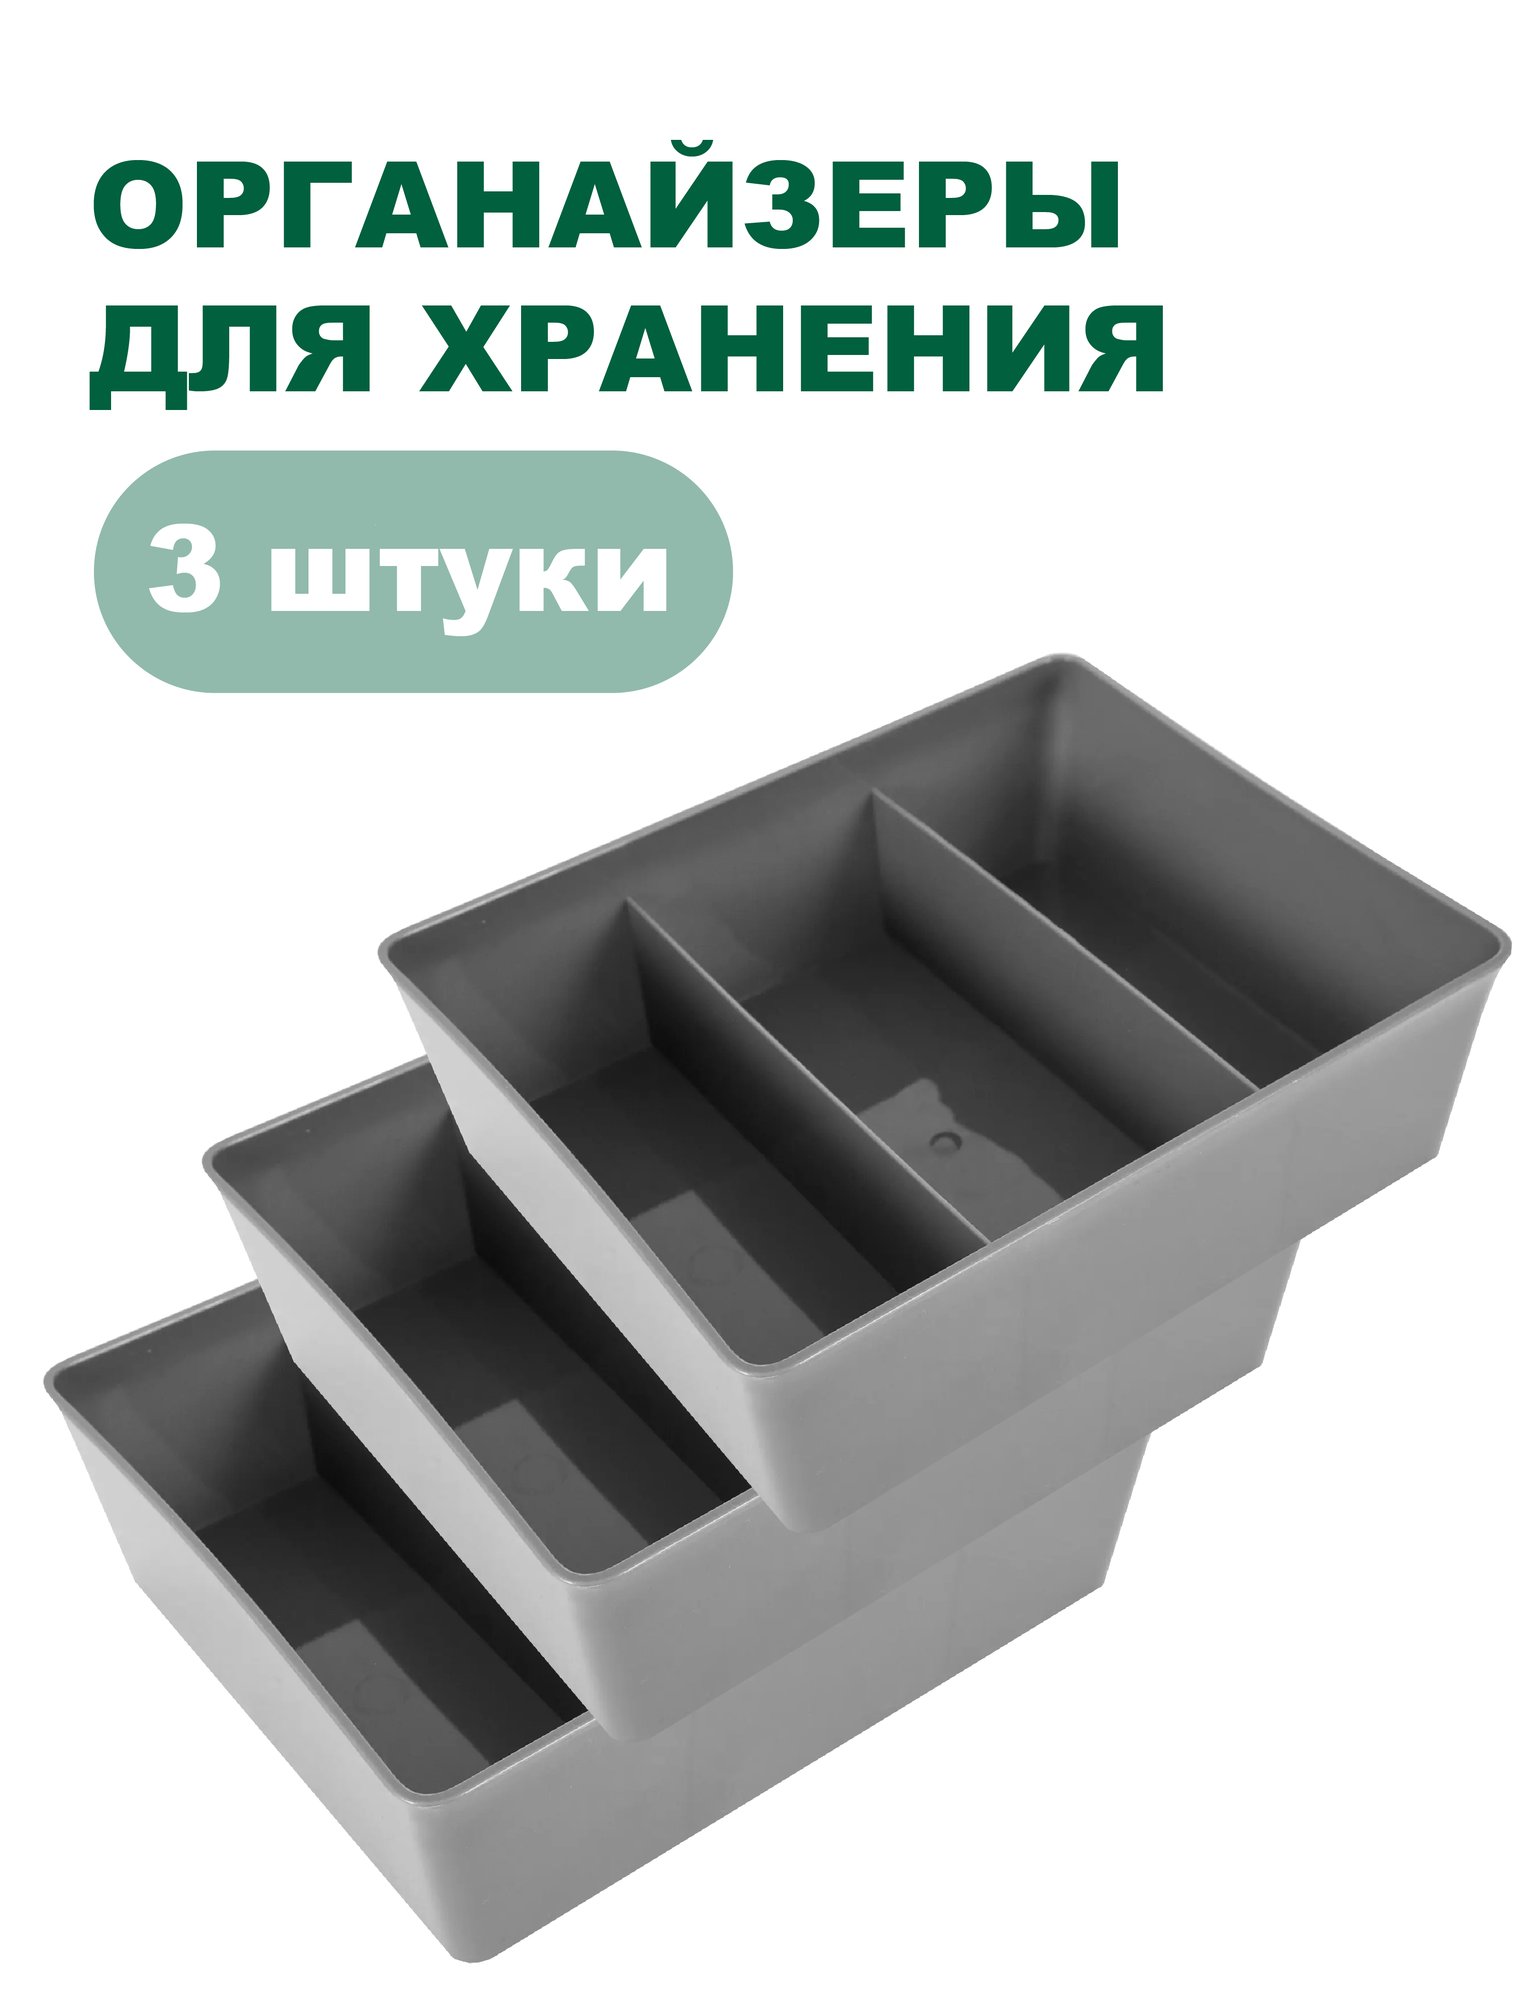 Набор контейнеров (органайзеров) для хранения, универсальные с перегородками, комплект 3 штуки, 20x16x6 см (Серый)